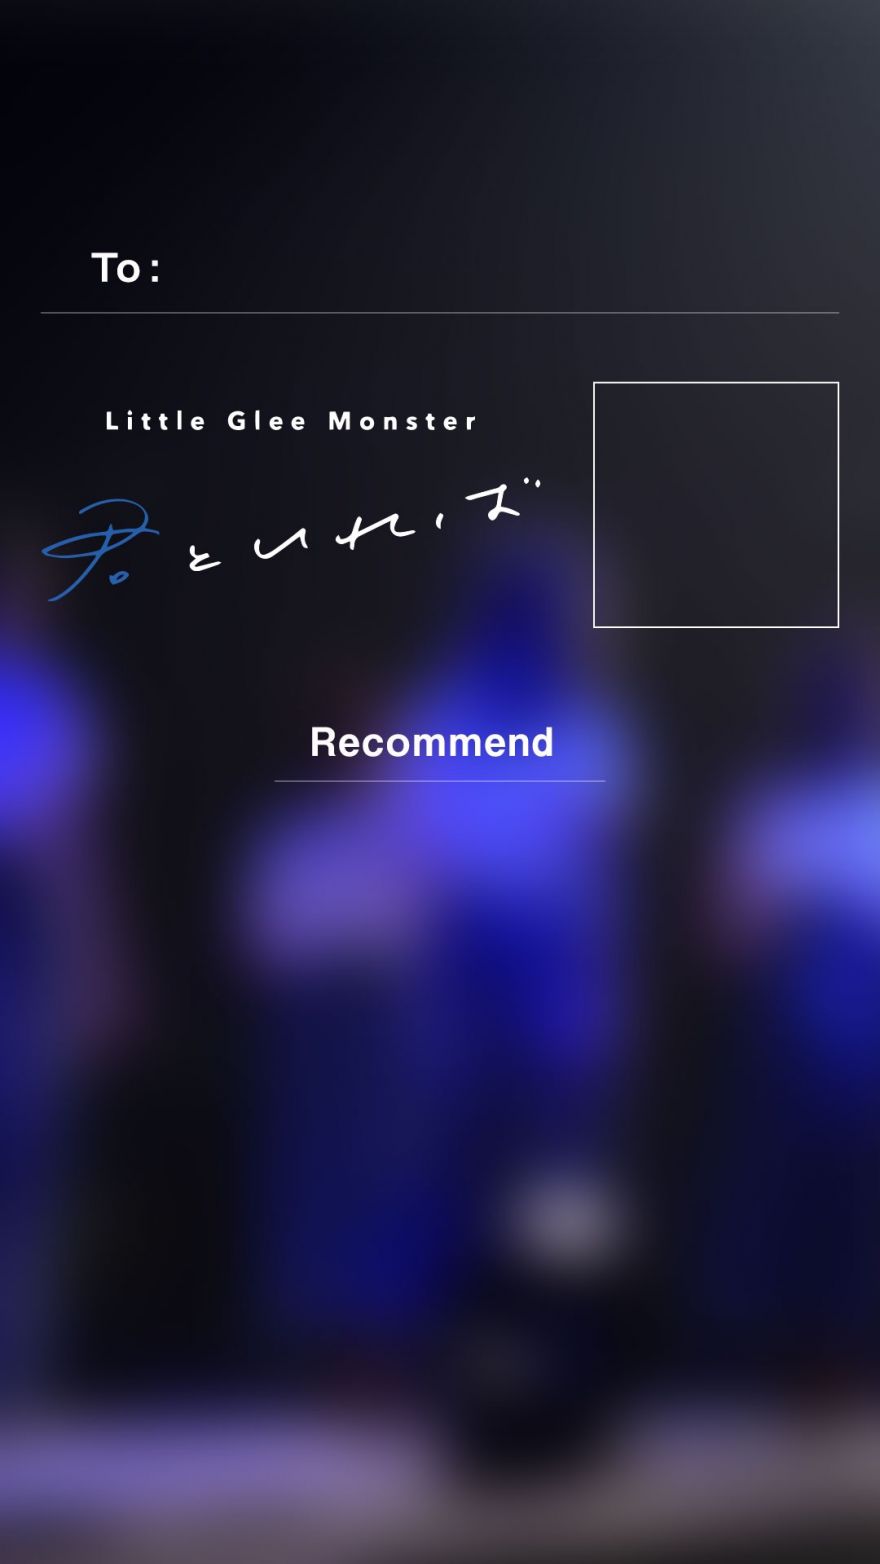 新曲 君といれば 配信記念キャンペーン詳細決定 Little Glee Monster ソニーミュージックオフィシャルサイト